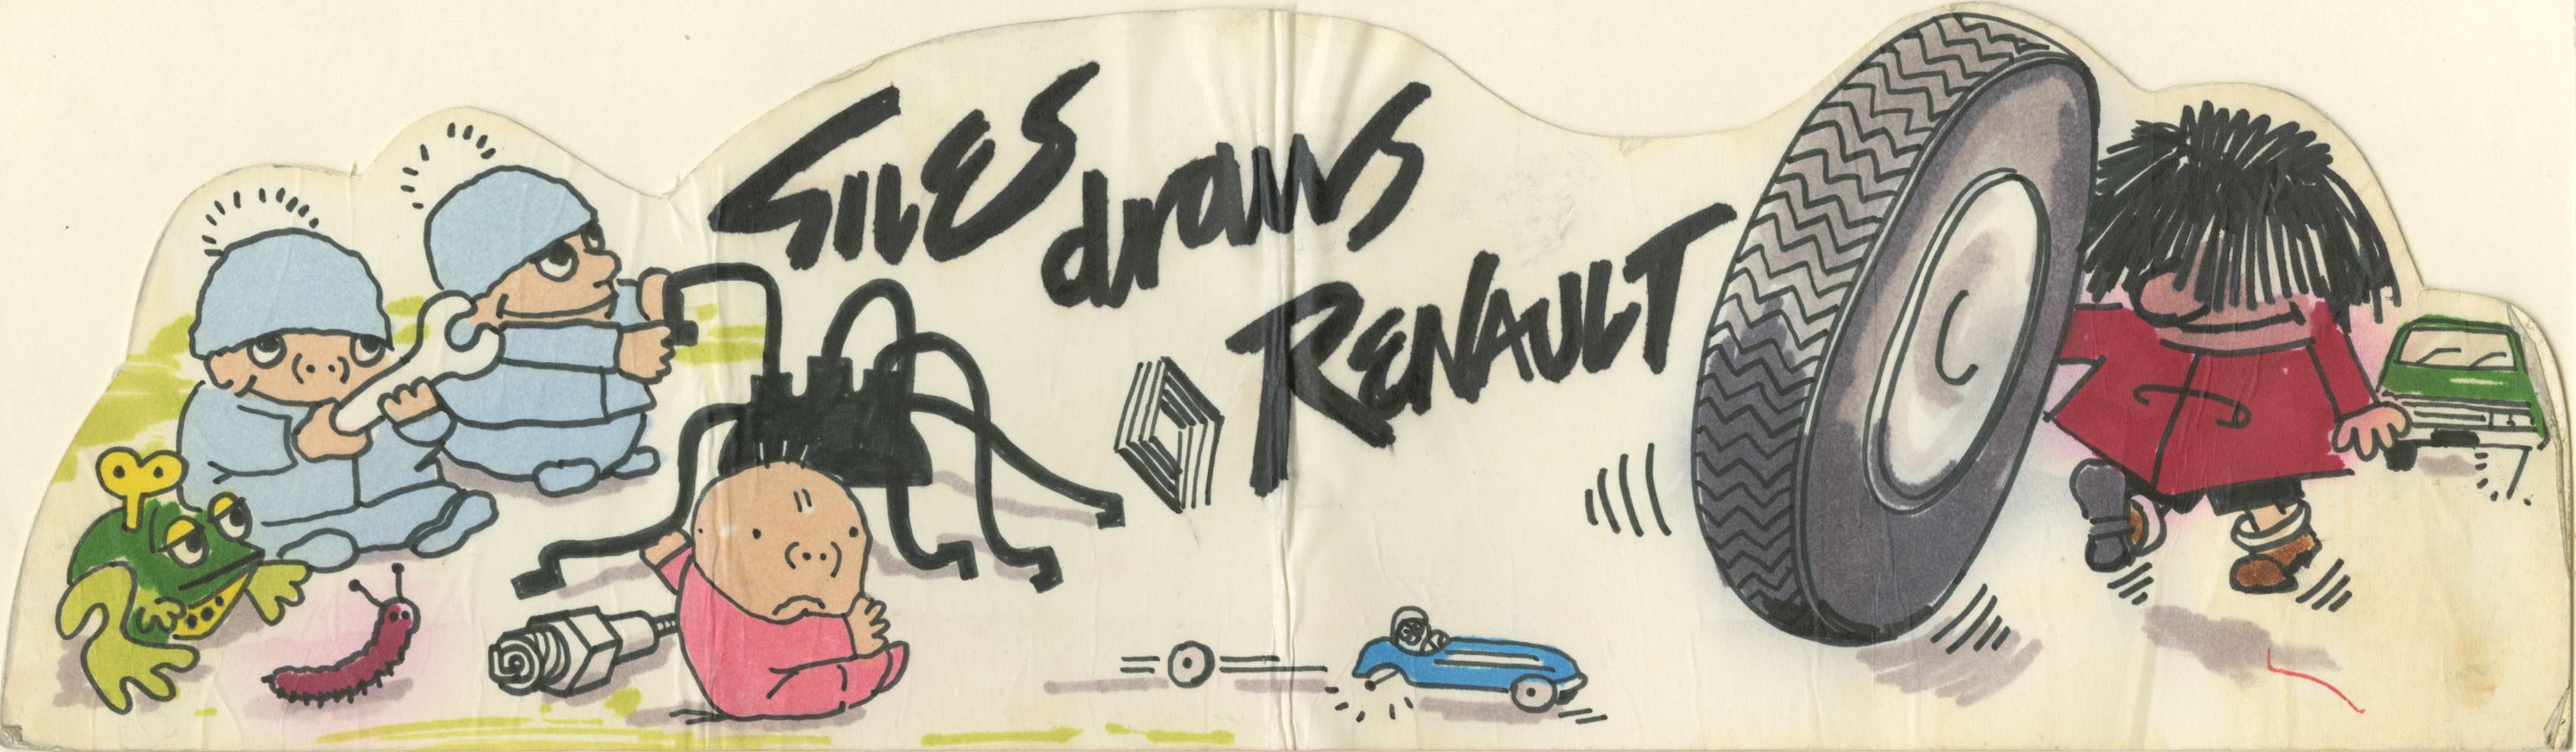 Sample colour artwork advertising Renault cars - Carl Giles, c.1975 (Image ref: GACS00008)